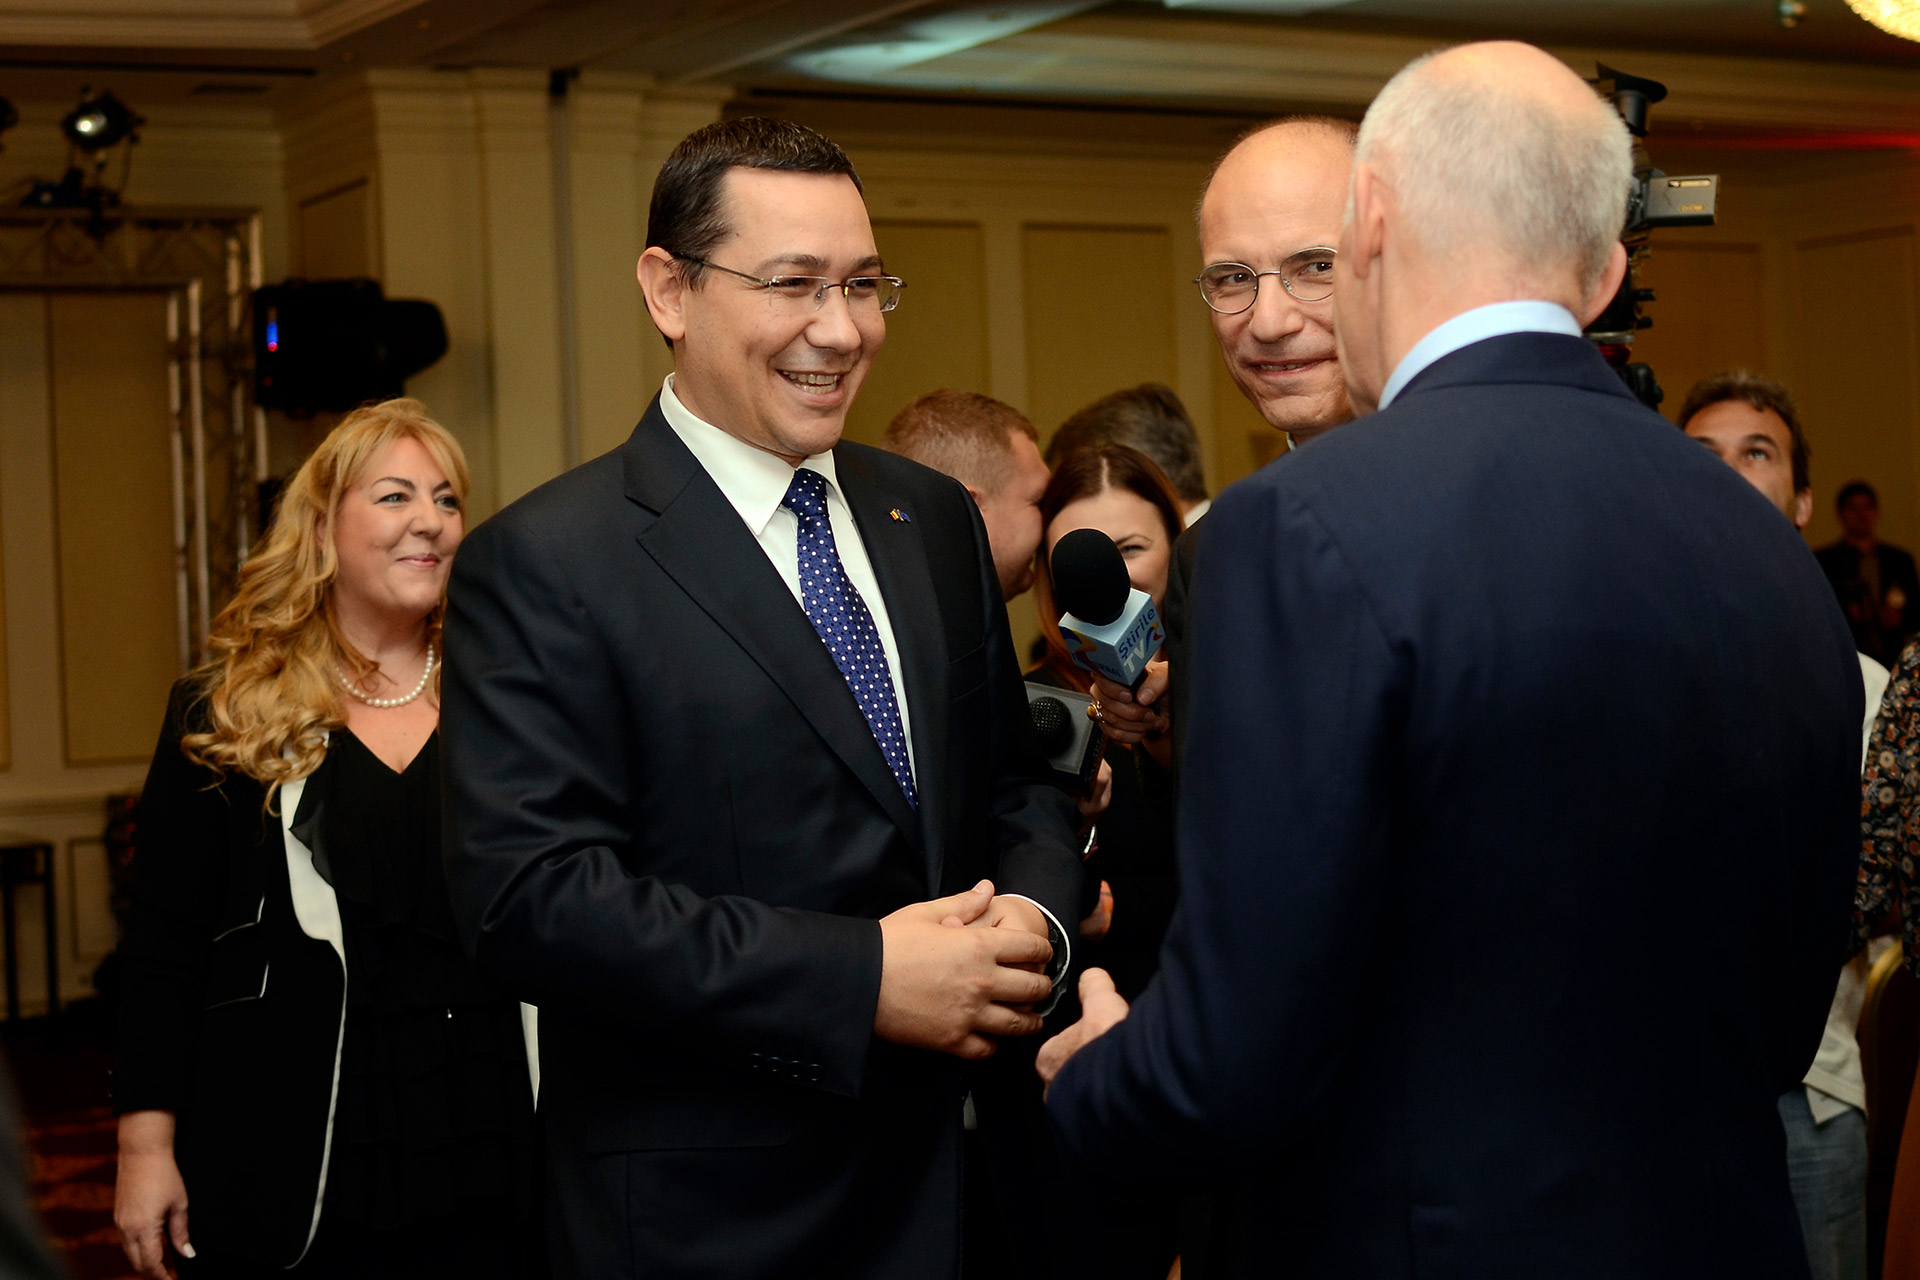 Statsminister Victor Ponta med greske politikere, 2014. Mikrofoner fra TV-stasjoner synes mellom politikerne. 